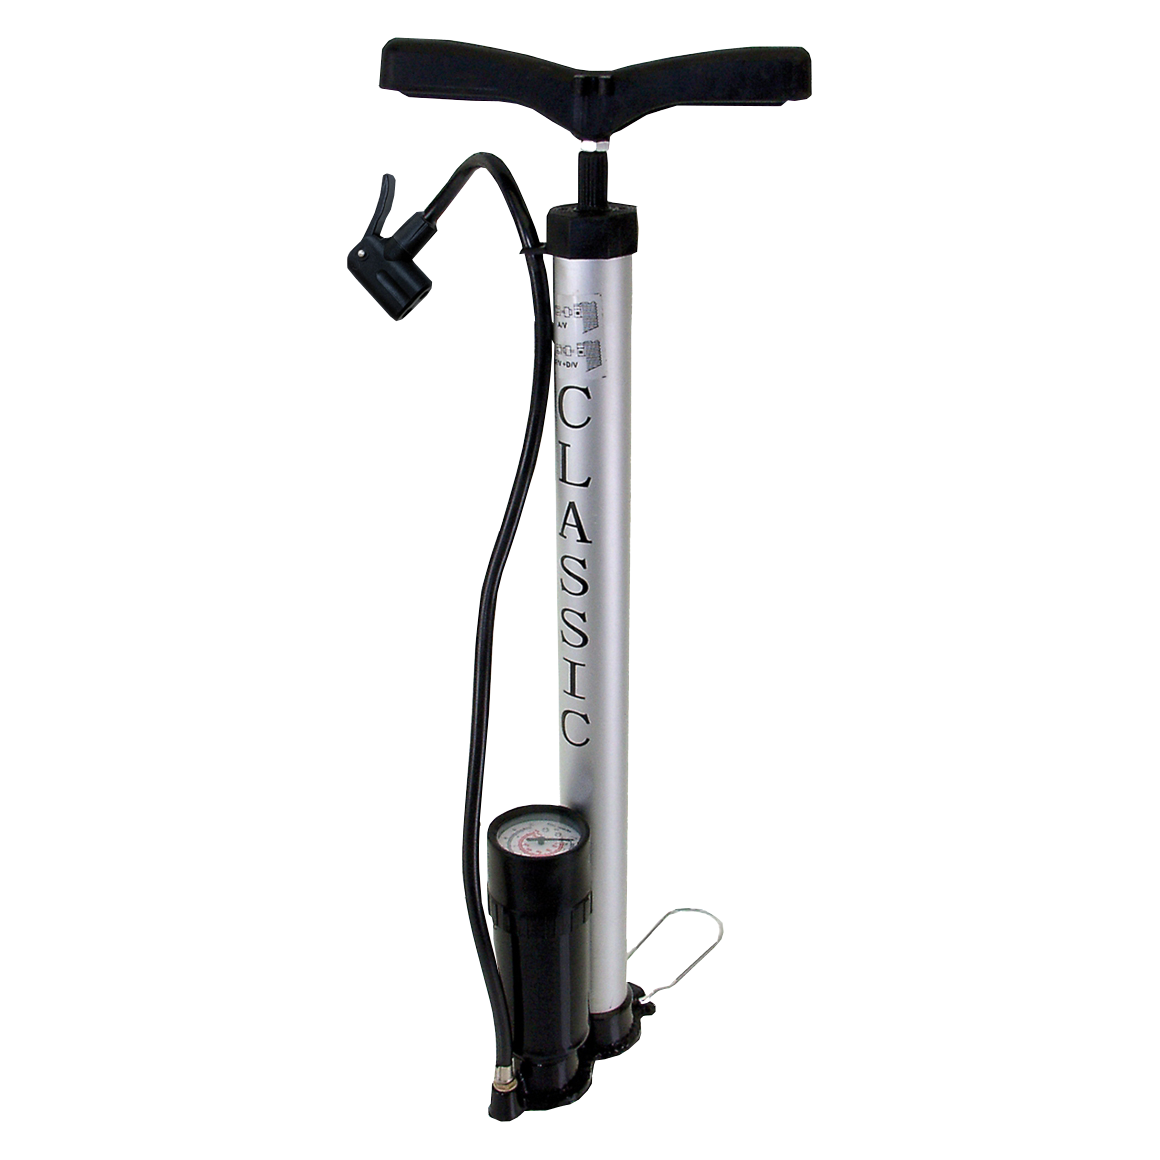 Где купить насос для велосипеда. Насос Classic Pump с манометром. Насос Aero pomp ручной с манометром. Насос для сапборда ручной с манометром. Ripoma велосипедный насос напольный ножной.